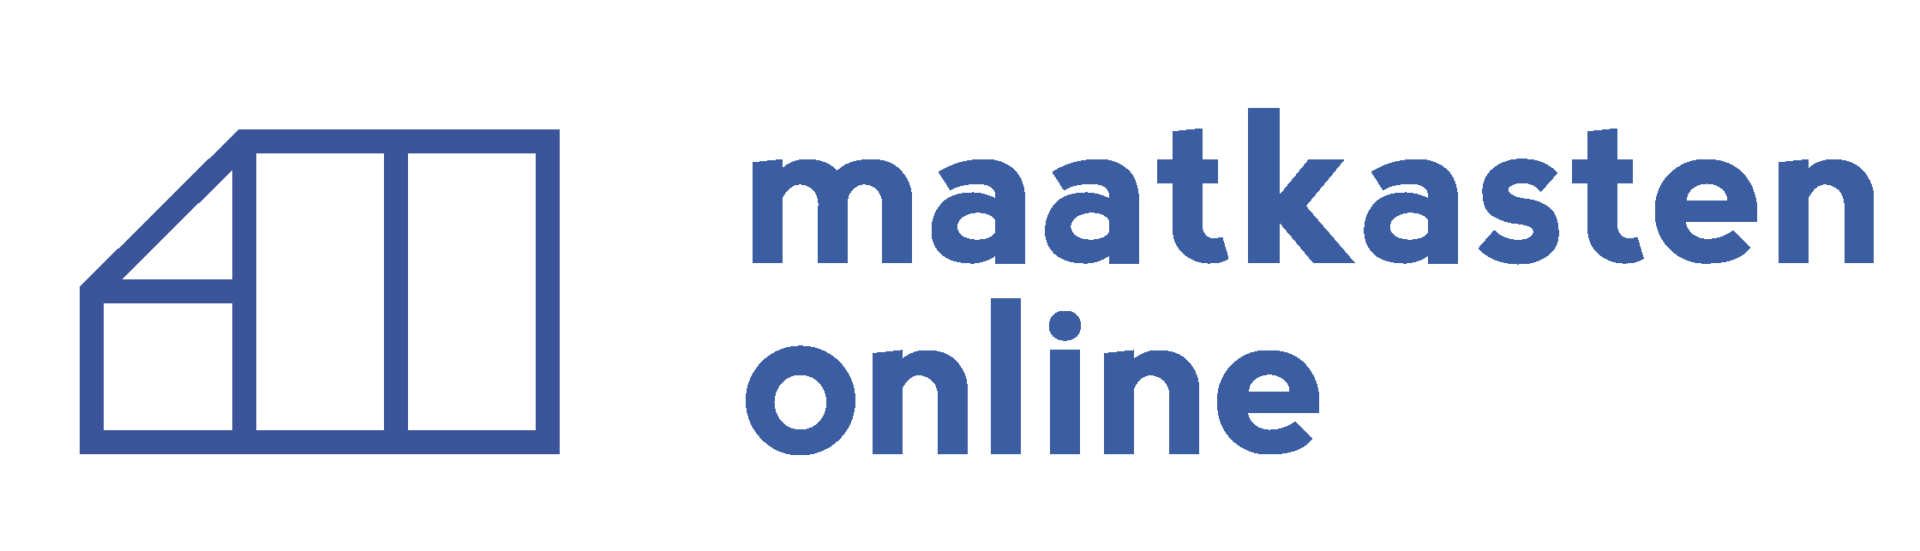 Maatkastenonline-blauw-logo